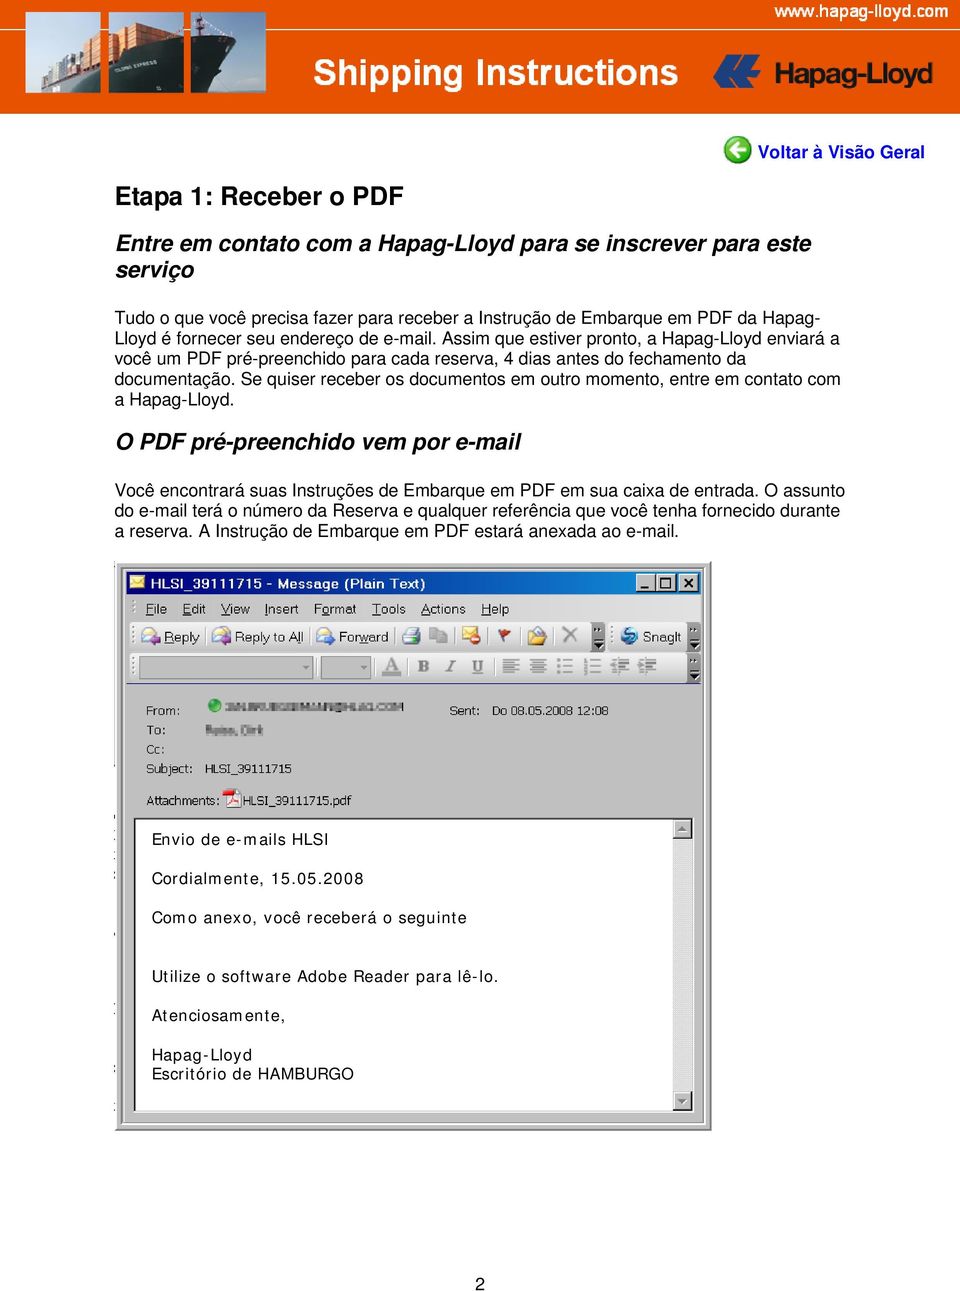 Se quiser receber os documentos em outro momento, entre em contato com a Hapag-Lloyd. O PDF pré-preenchido vem por e-mail Você encontrará suas Instruções de Embarque em PDF em sua caixa de entrada.